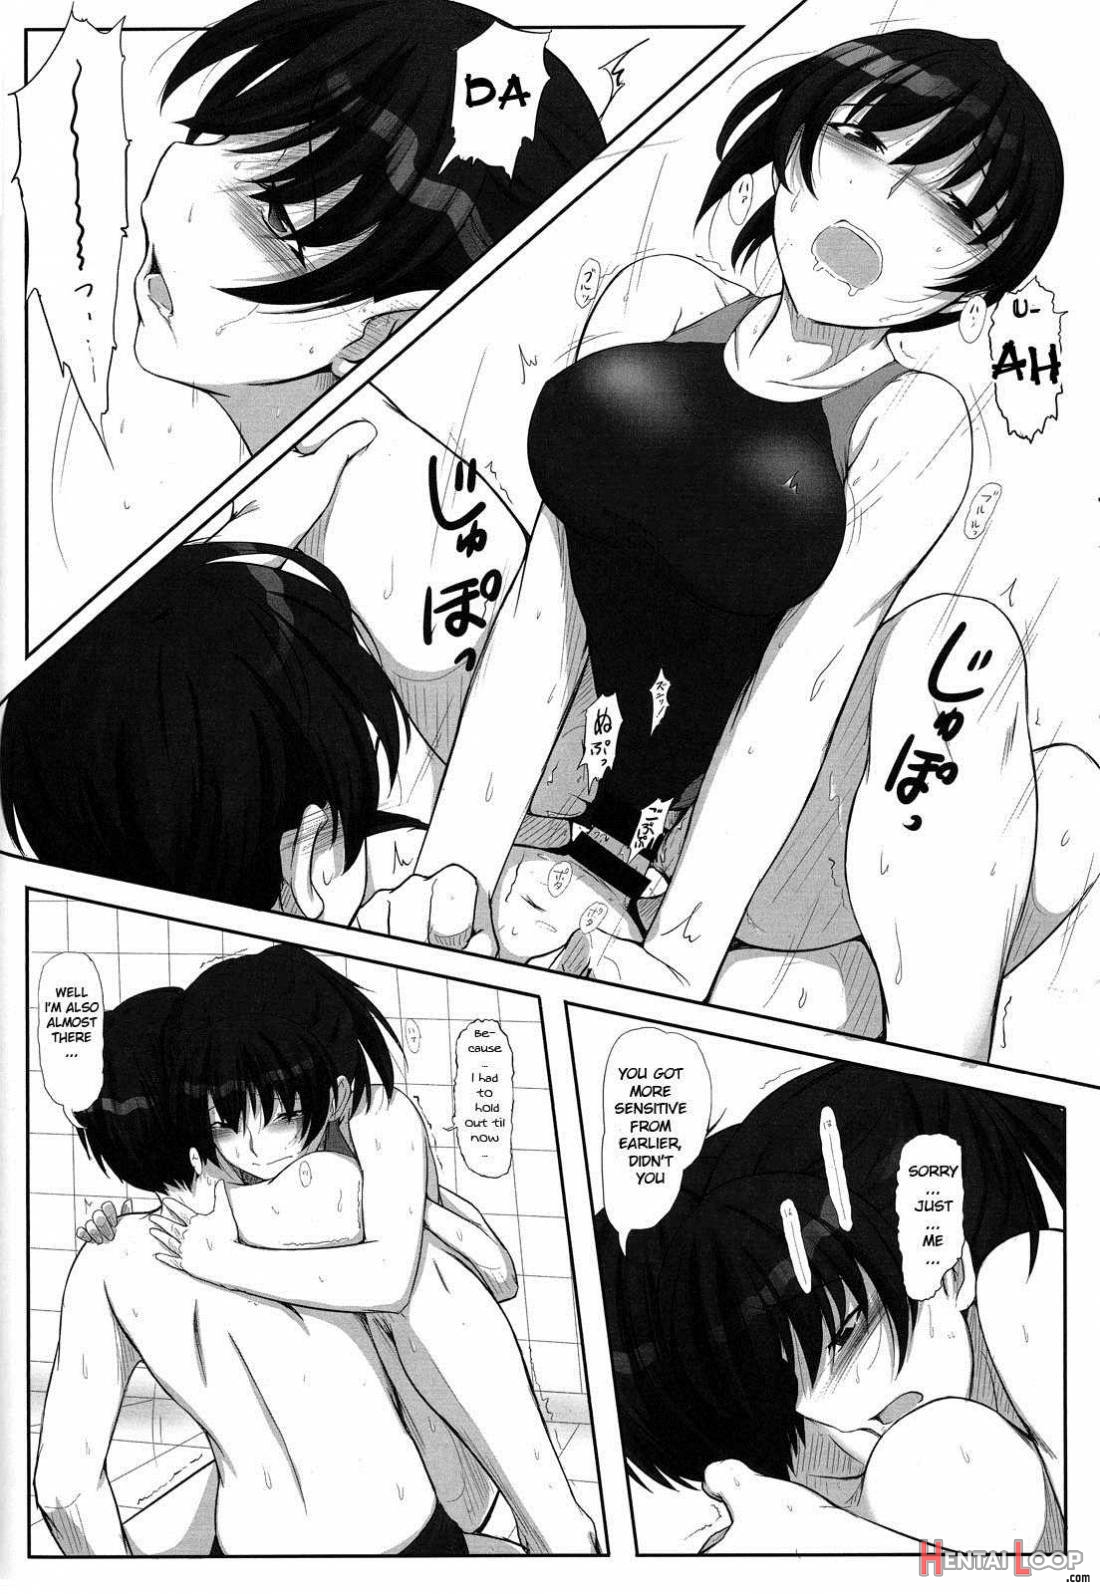 Mikkai 4 page 13